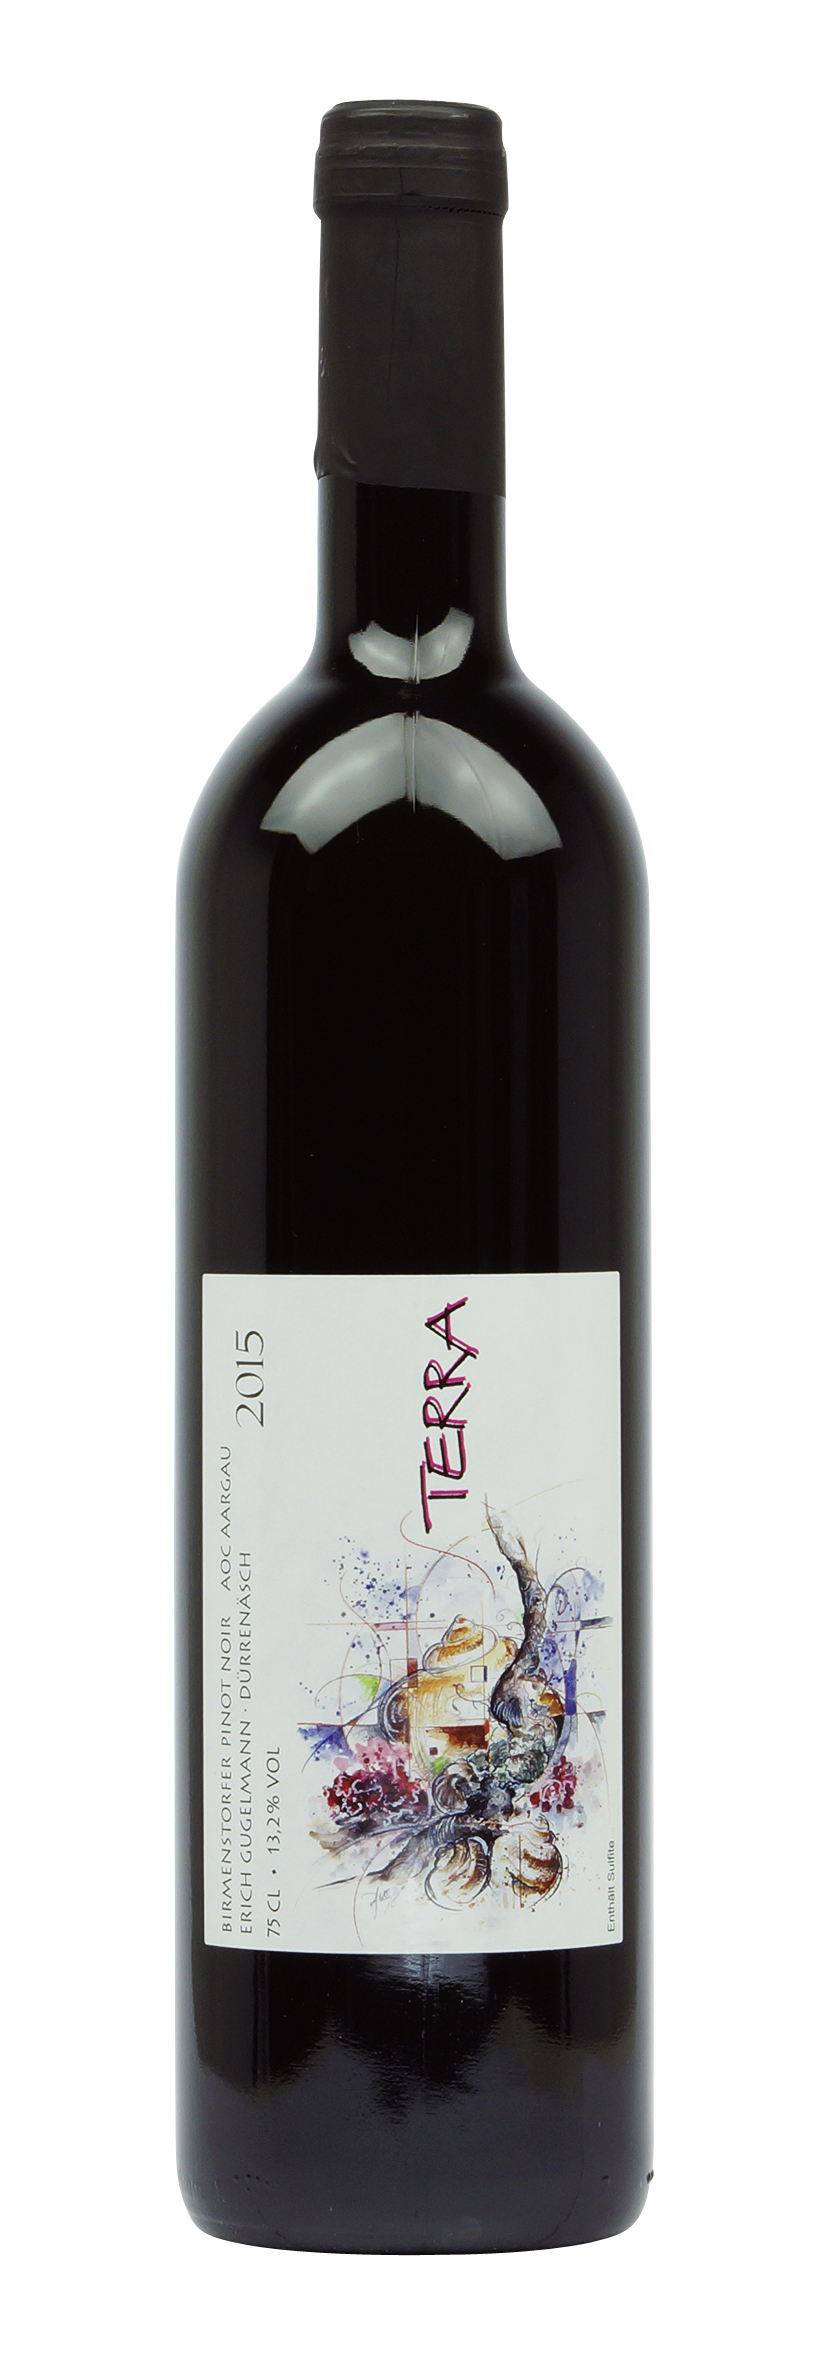 Aargau AOC Pinot Noir Terra 2015